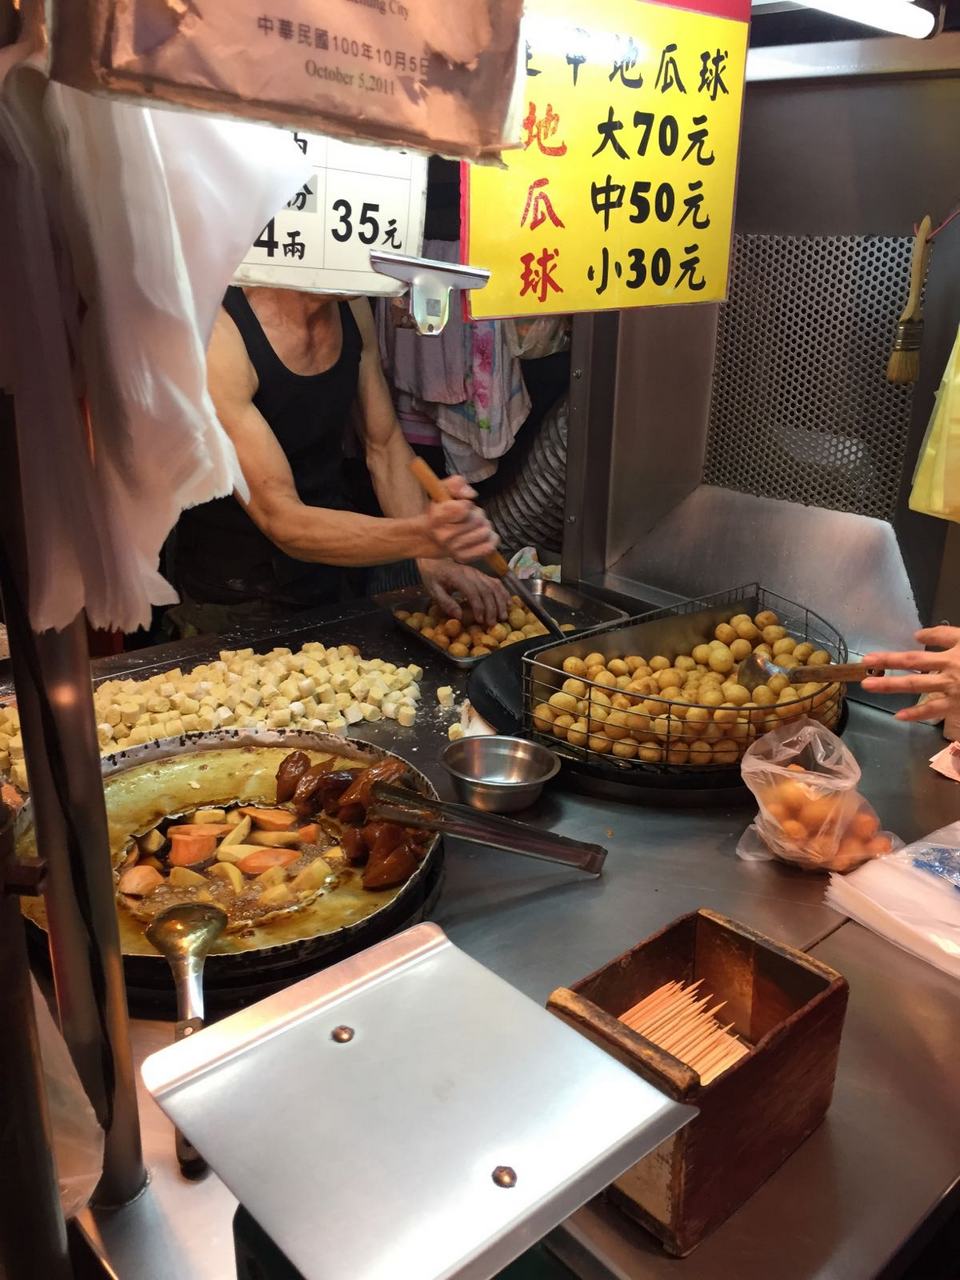 fengjia night market must eat,taichung fengjia night market,what to eat at fengjia night market taichung taiwan (1)